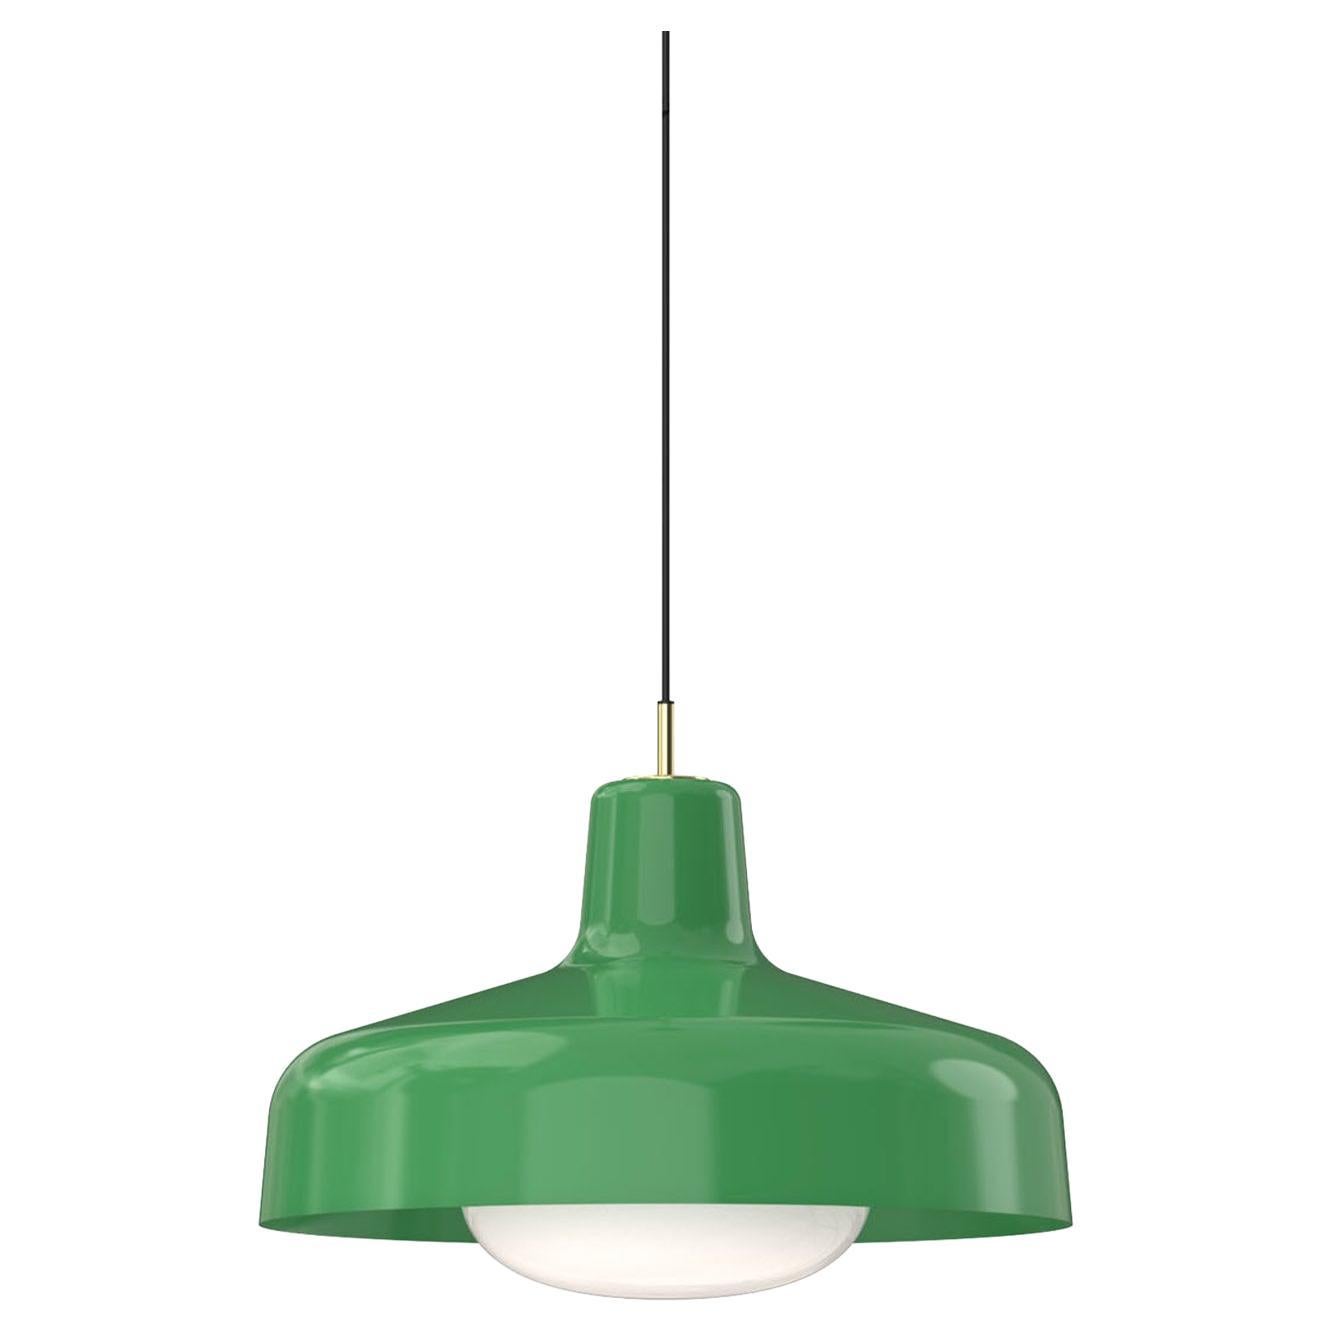 Paolina Green Pendant Lamp By Ignazio gardella